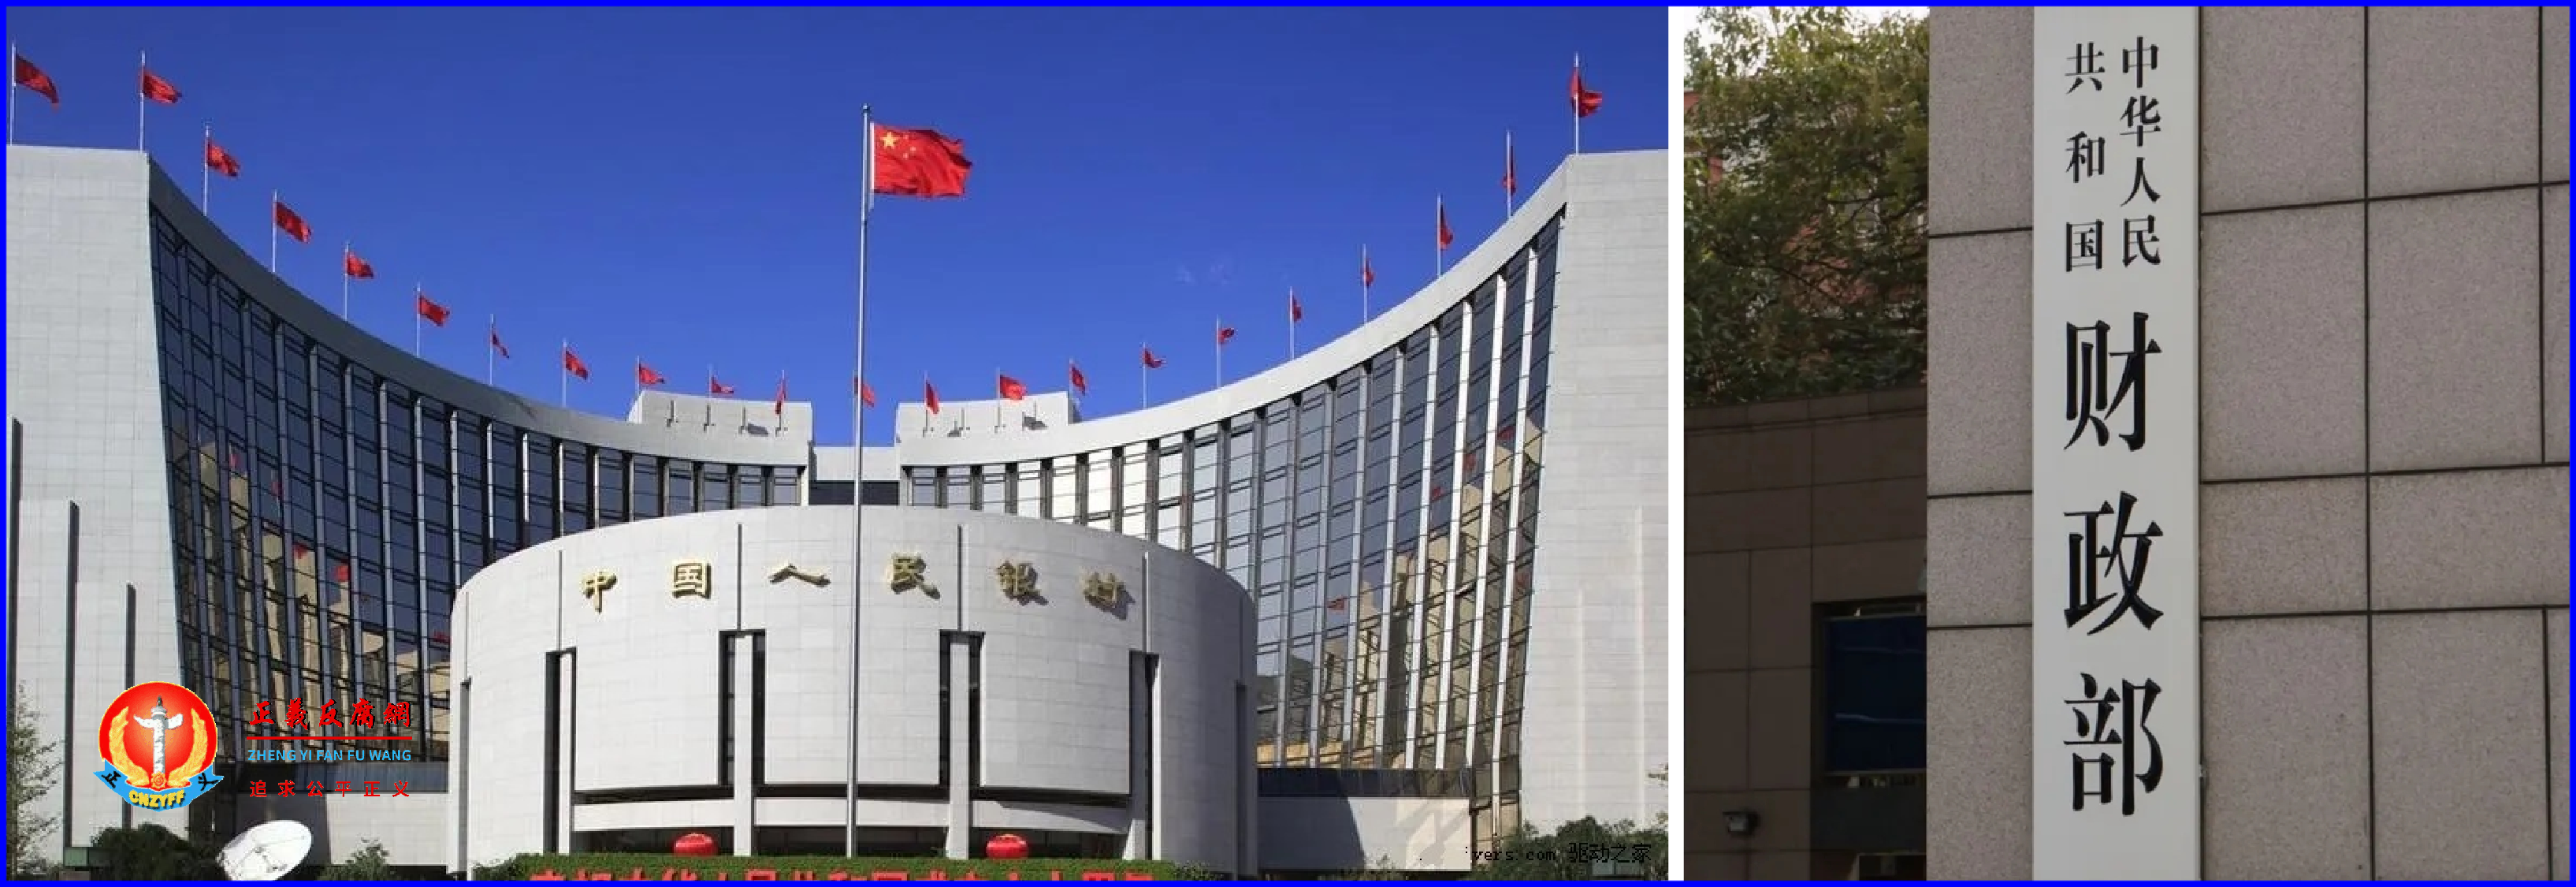 位于北京市的央行总部与财政部。.png